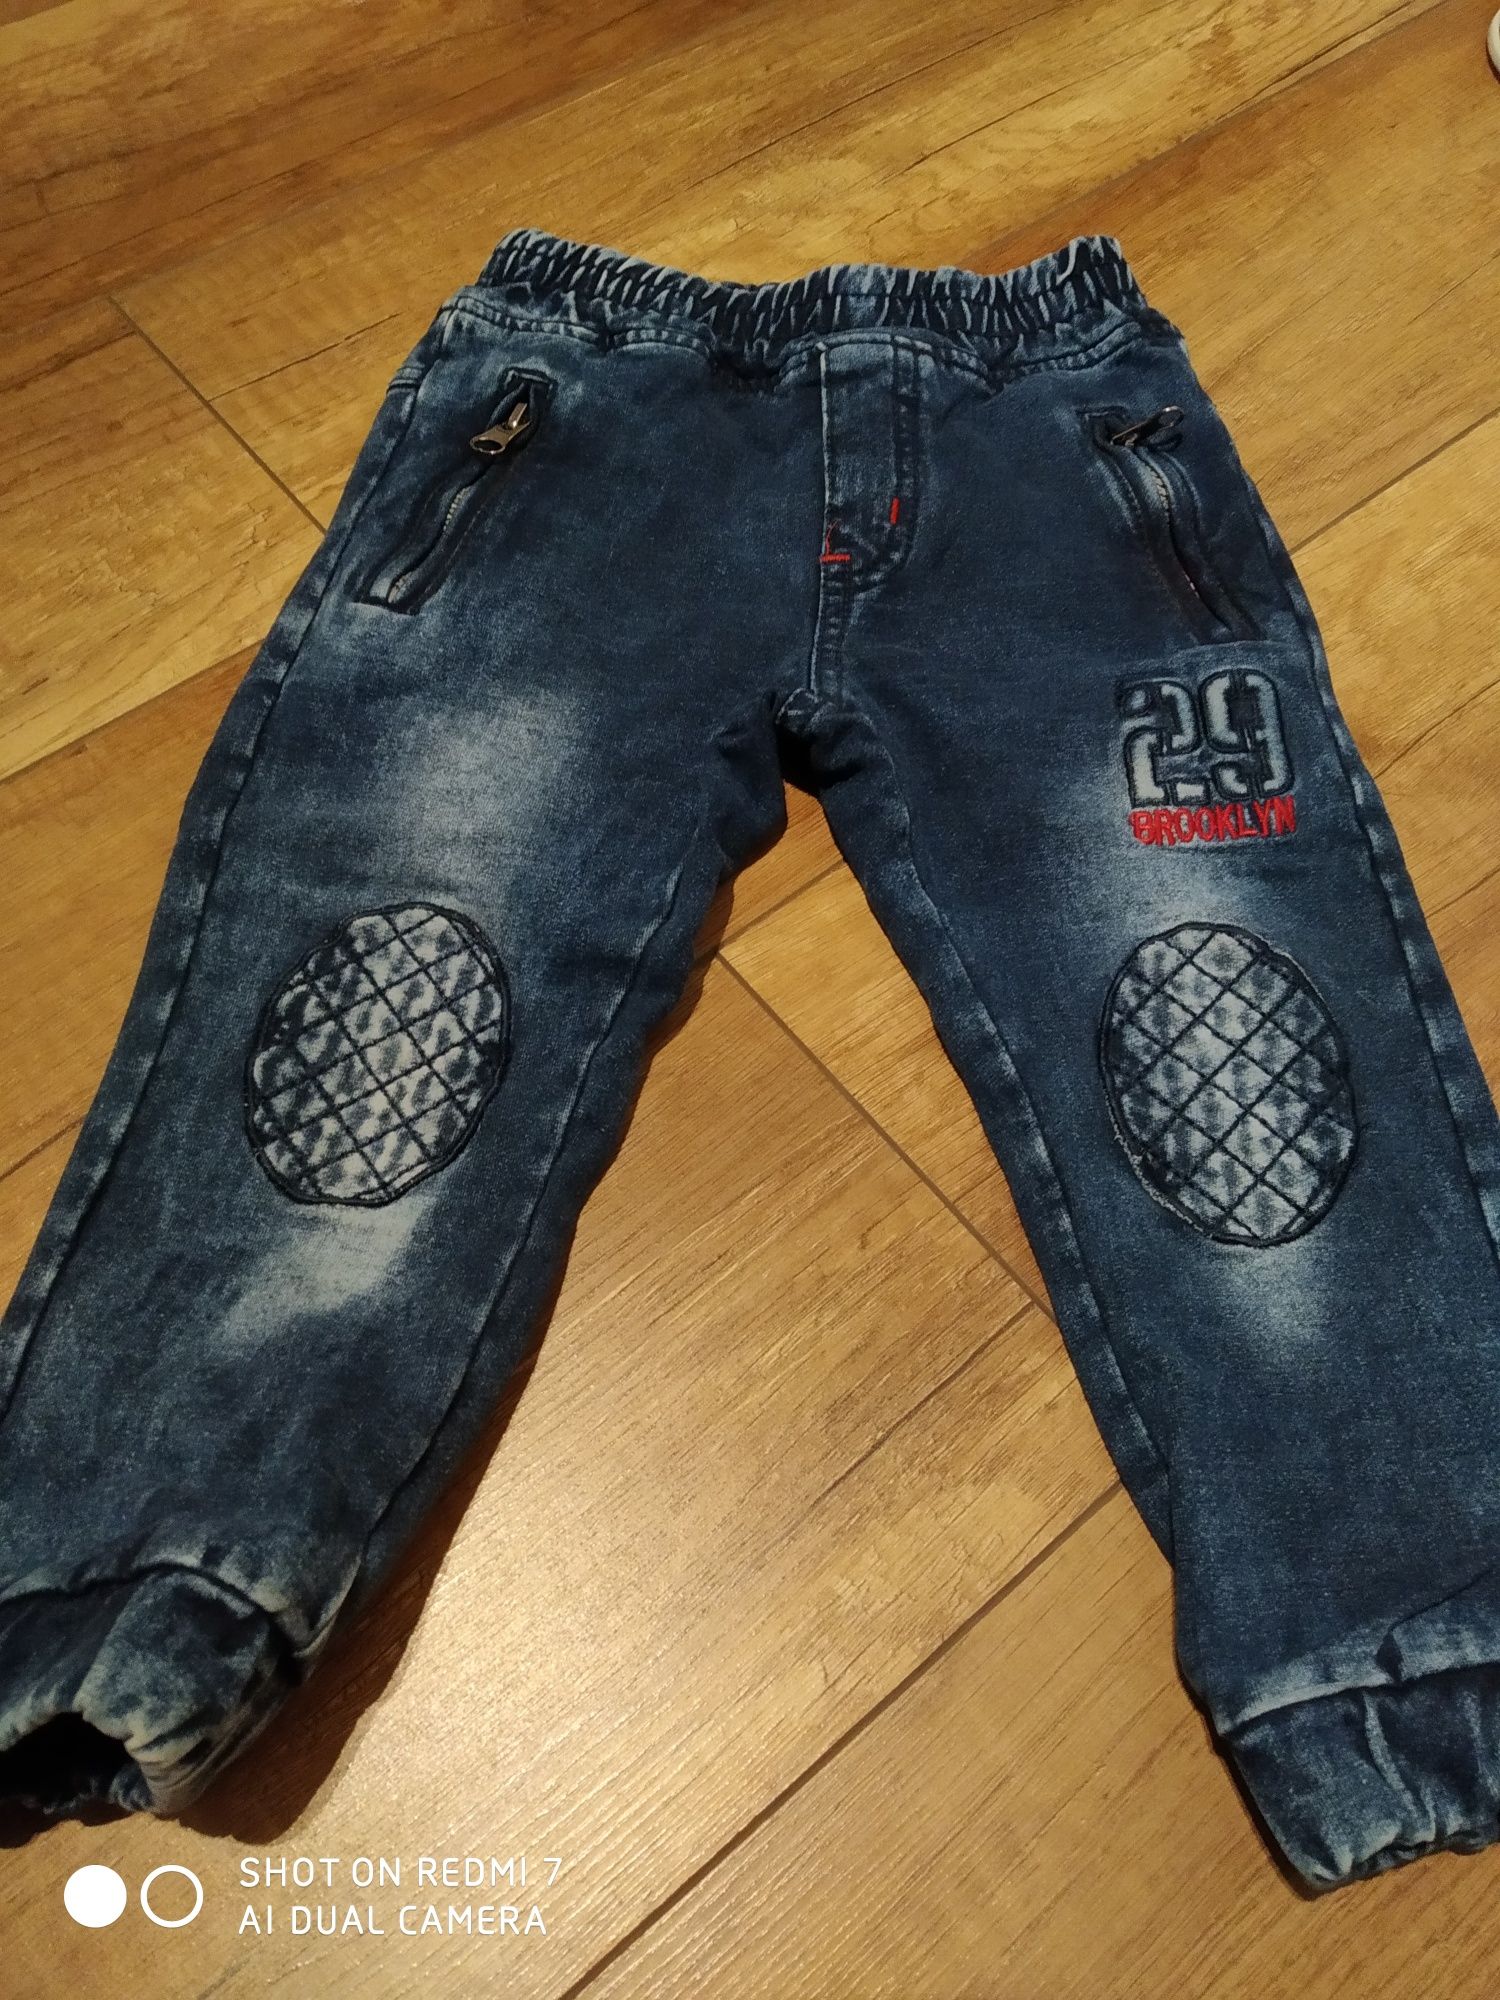 Jeansy spodnie chłopięce 92